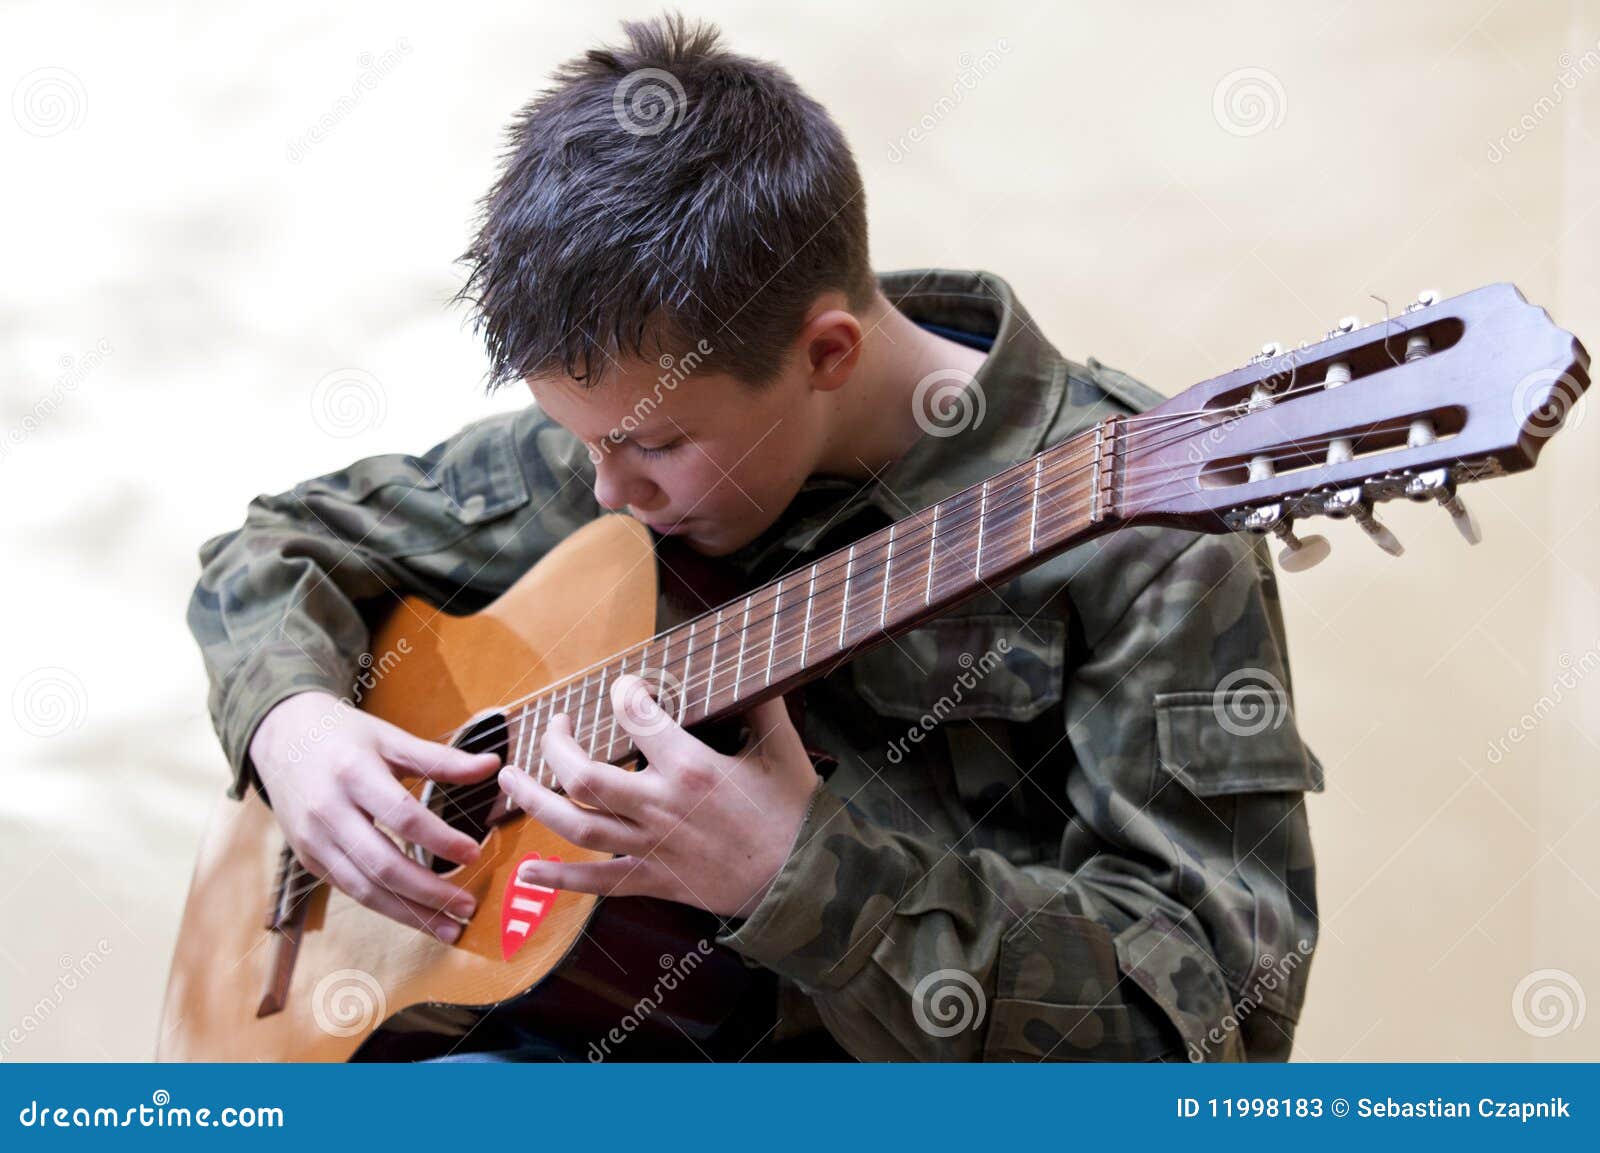 boy scout guitar